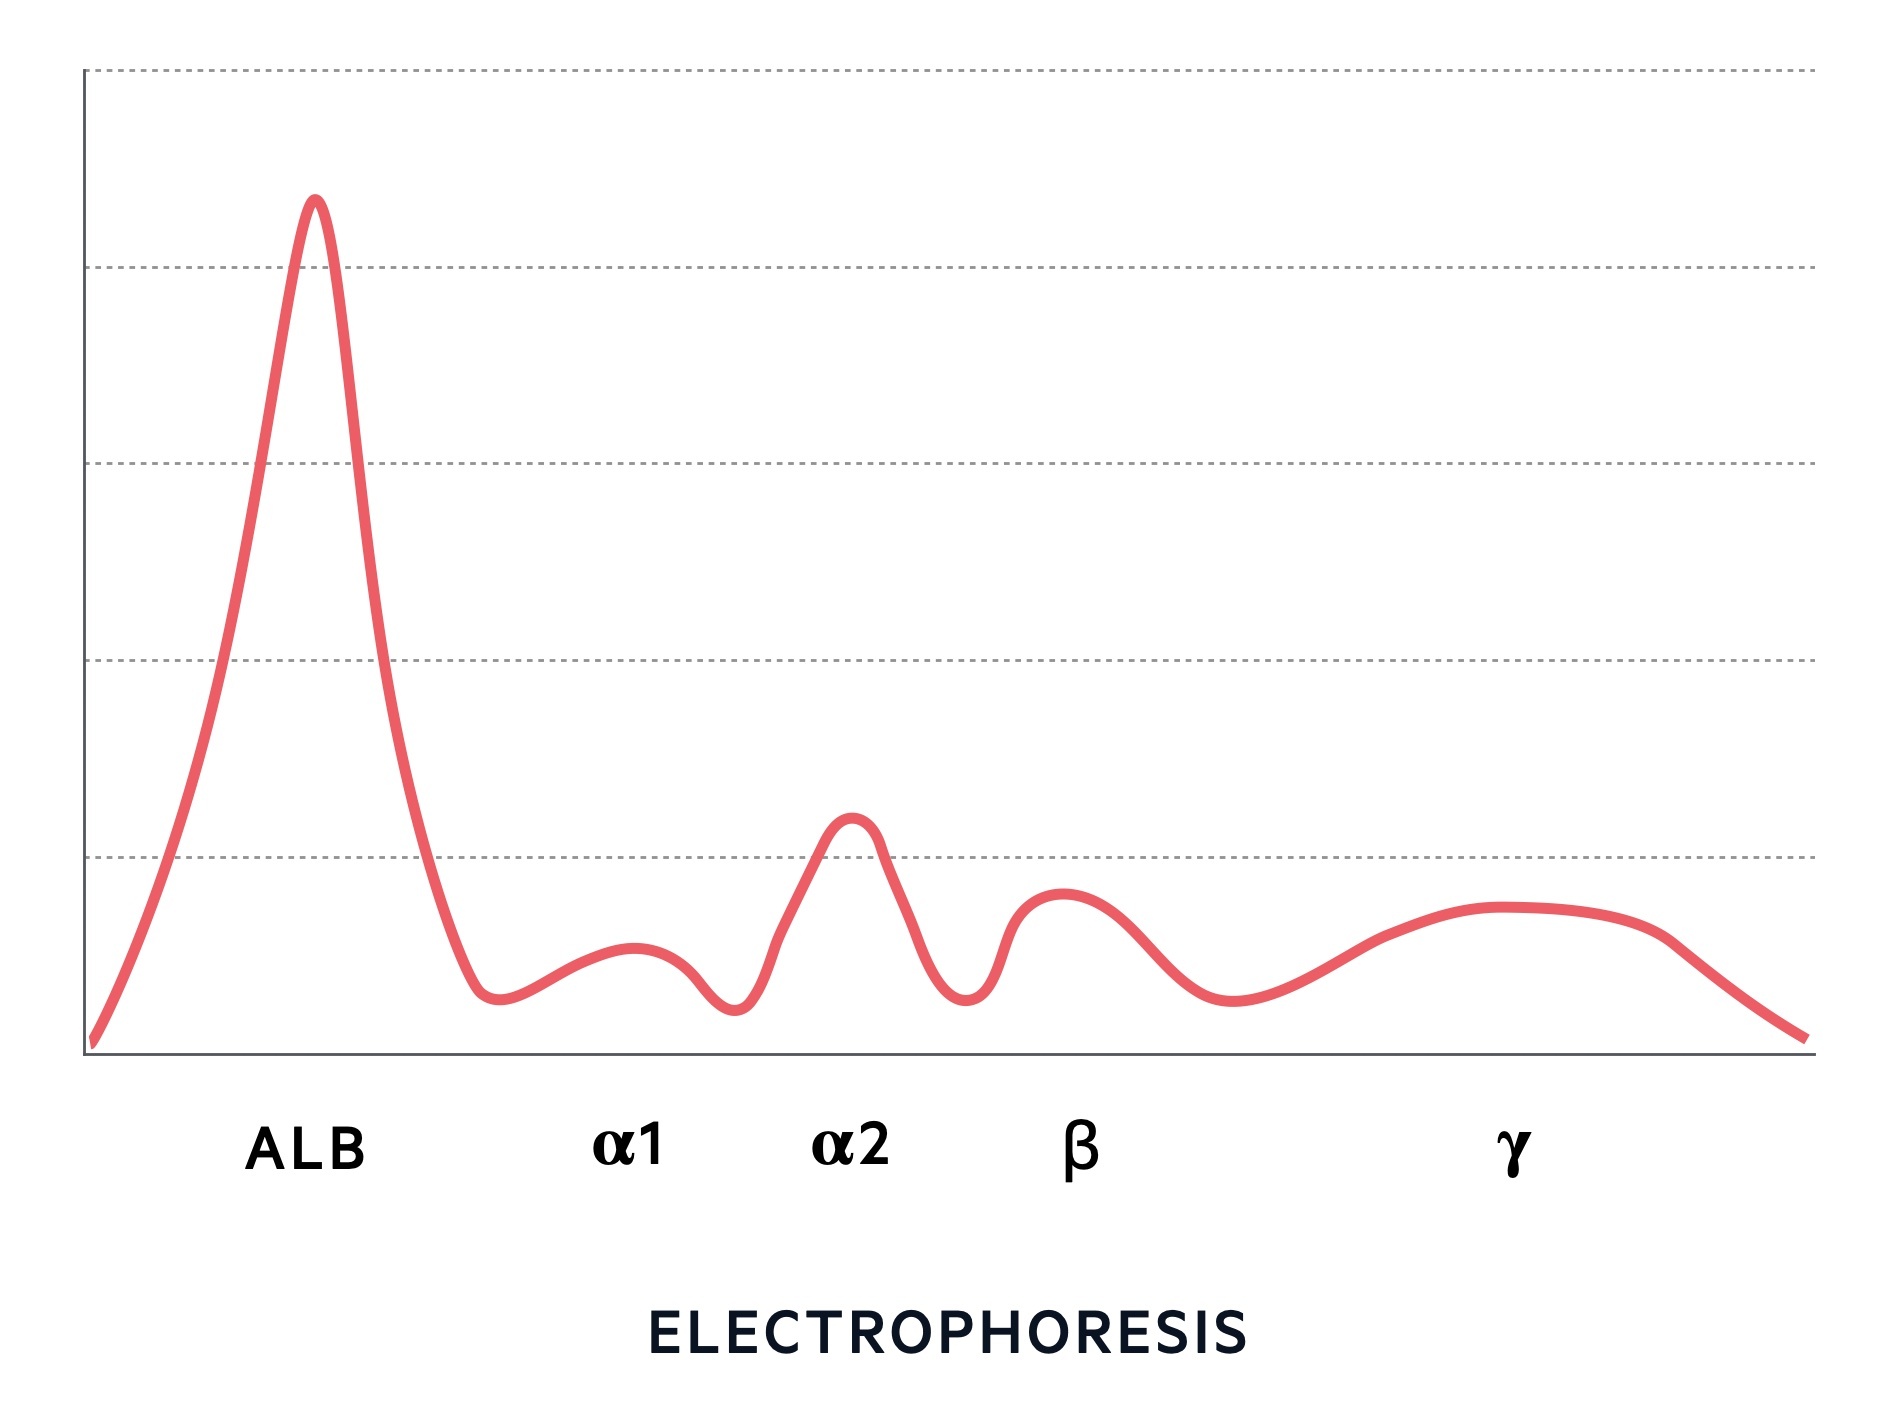 Protein electrophoresis